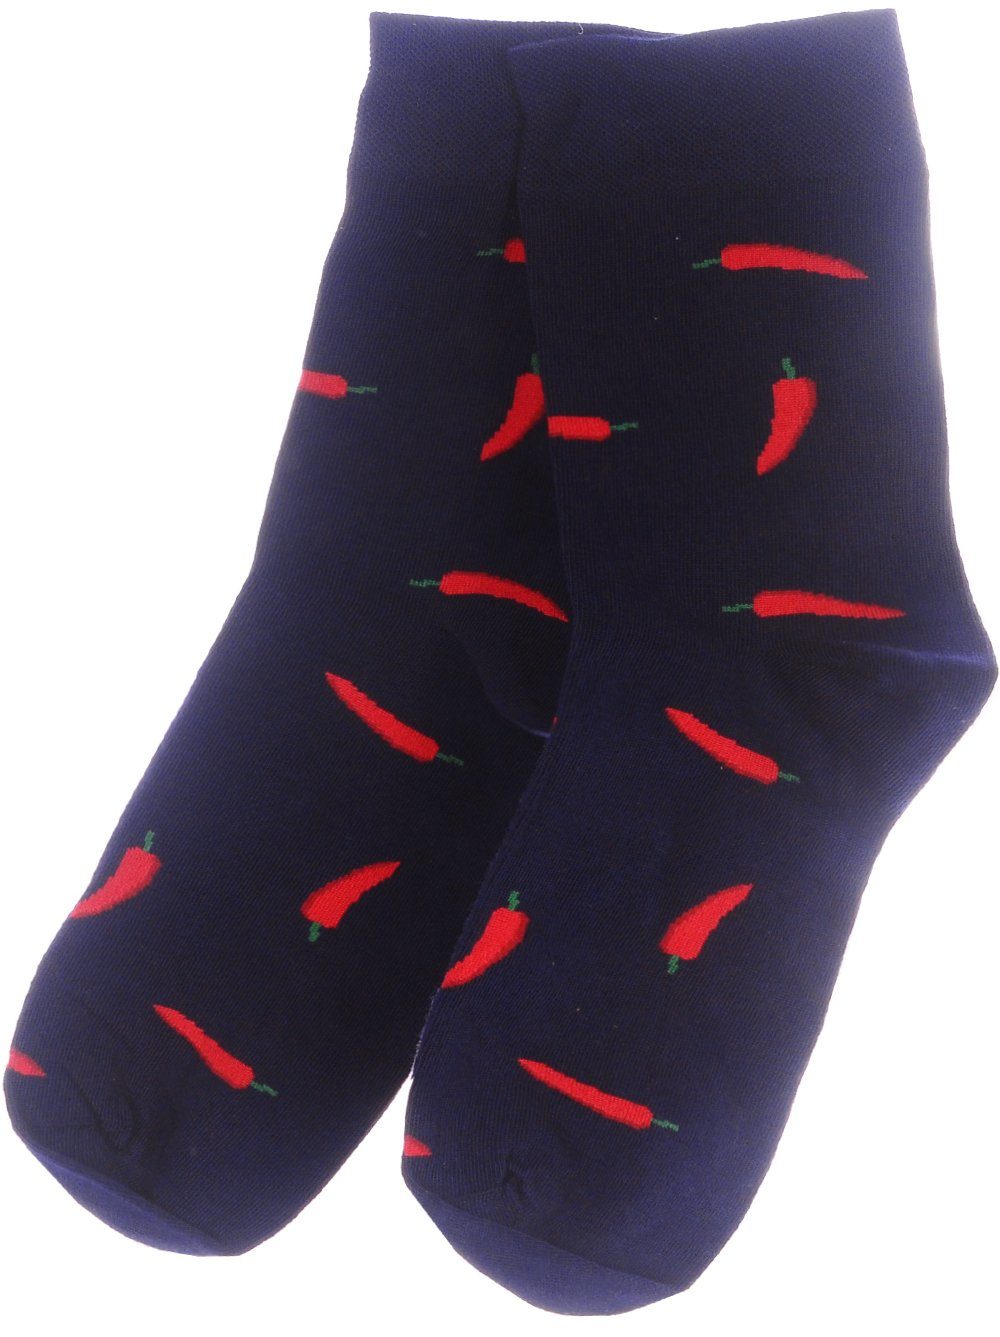 Martinex Socken Freizeitsocken 1 Paar Socken bunte witzige Strümpfe 35 38 39 42 43 46 nahtlos, elastisch, atmungsaktiv